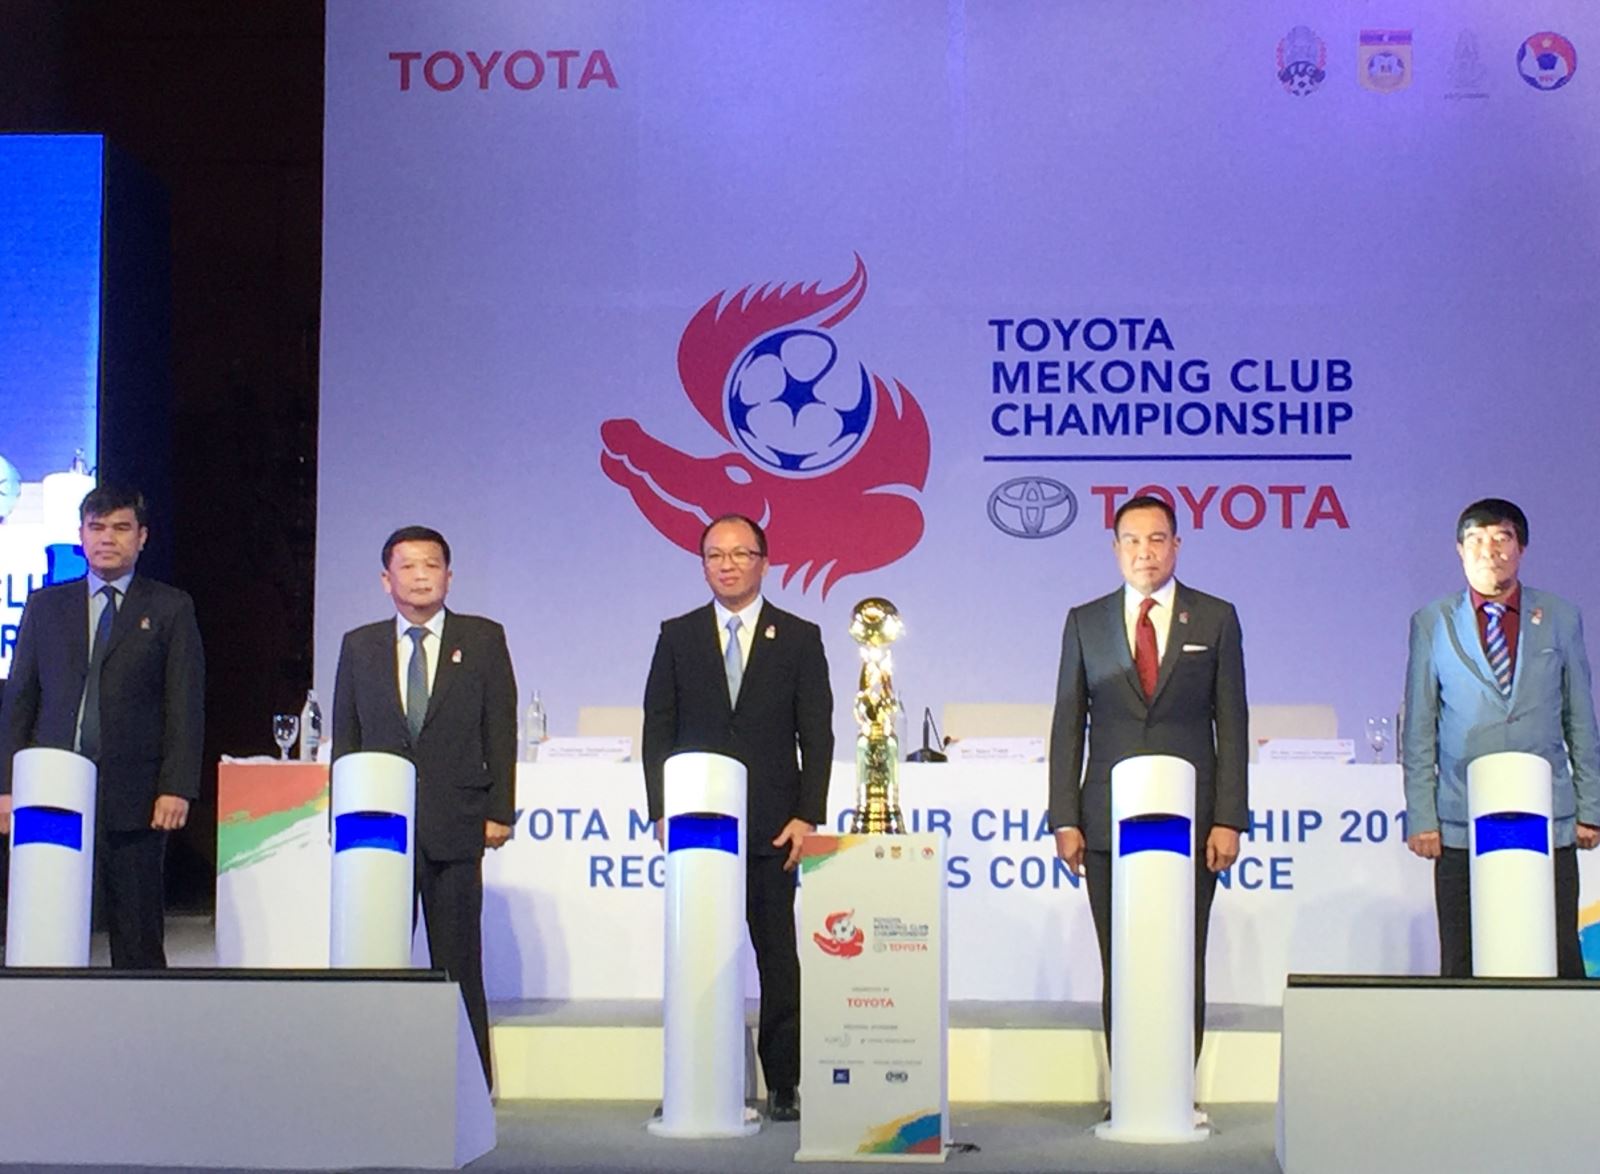 Đại diện của 4 Liên đoàn bóng đá Việt Nam, Thái Lan, Lào, Campuchia và đại diện của công ty Toyota châu Á Thái Bình Dương trong lễ khai mạc